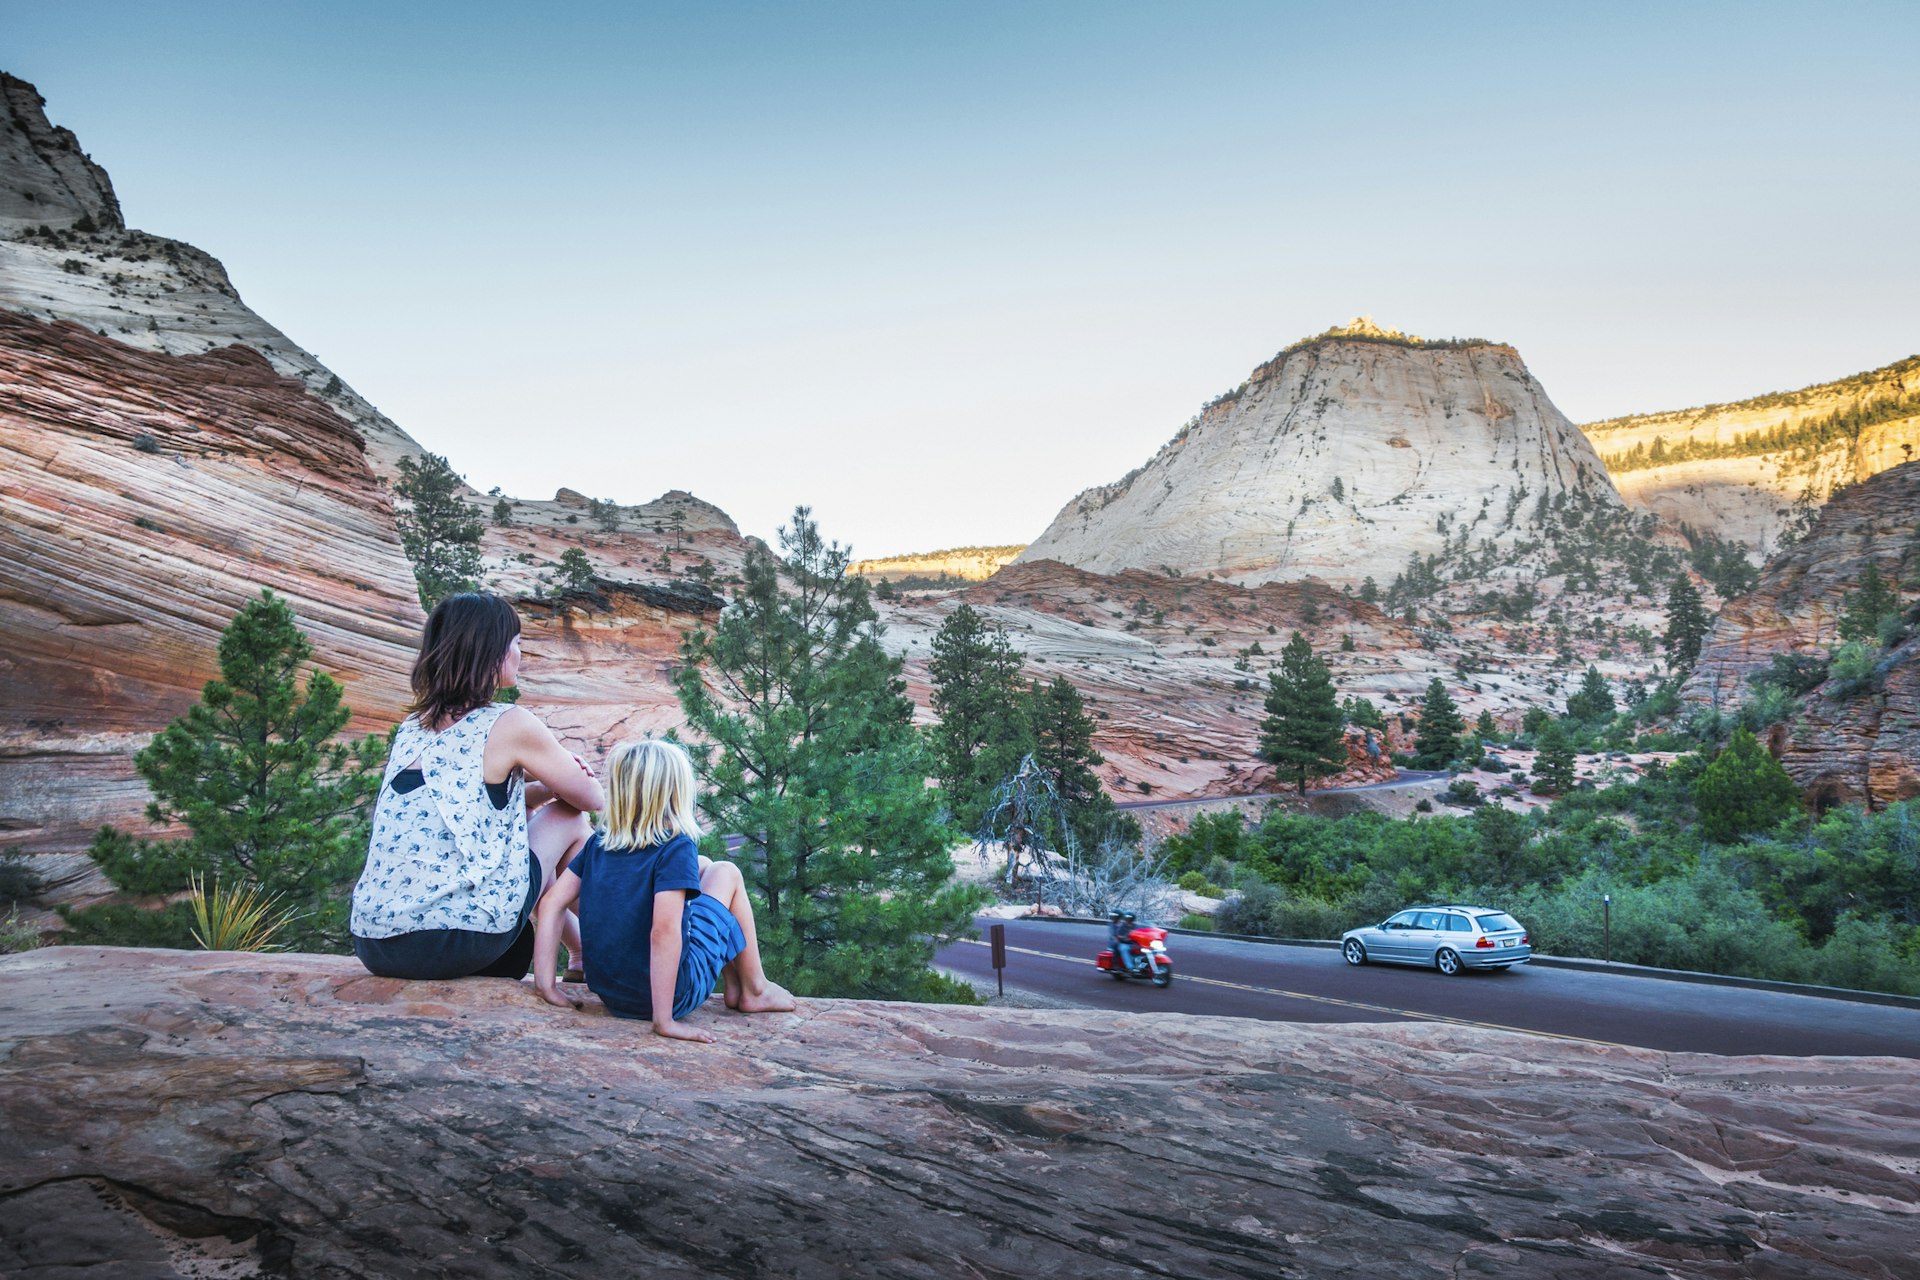 Uma mulher e uma criança sentam-se nas rochas acima de uma paisagem de rocha vermelha enquanto um carro e uma moto passam